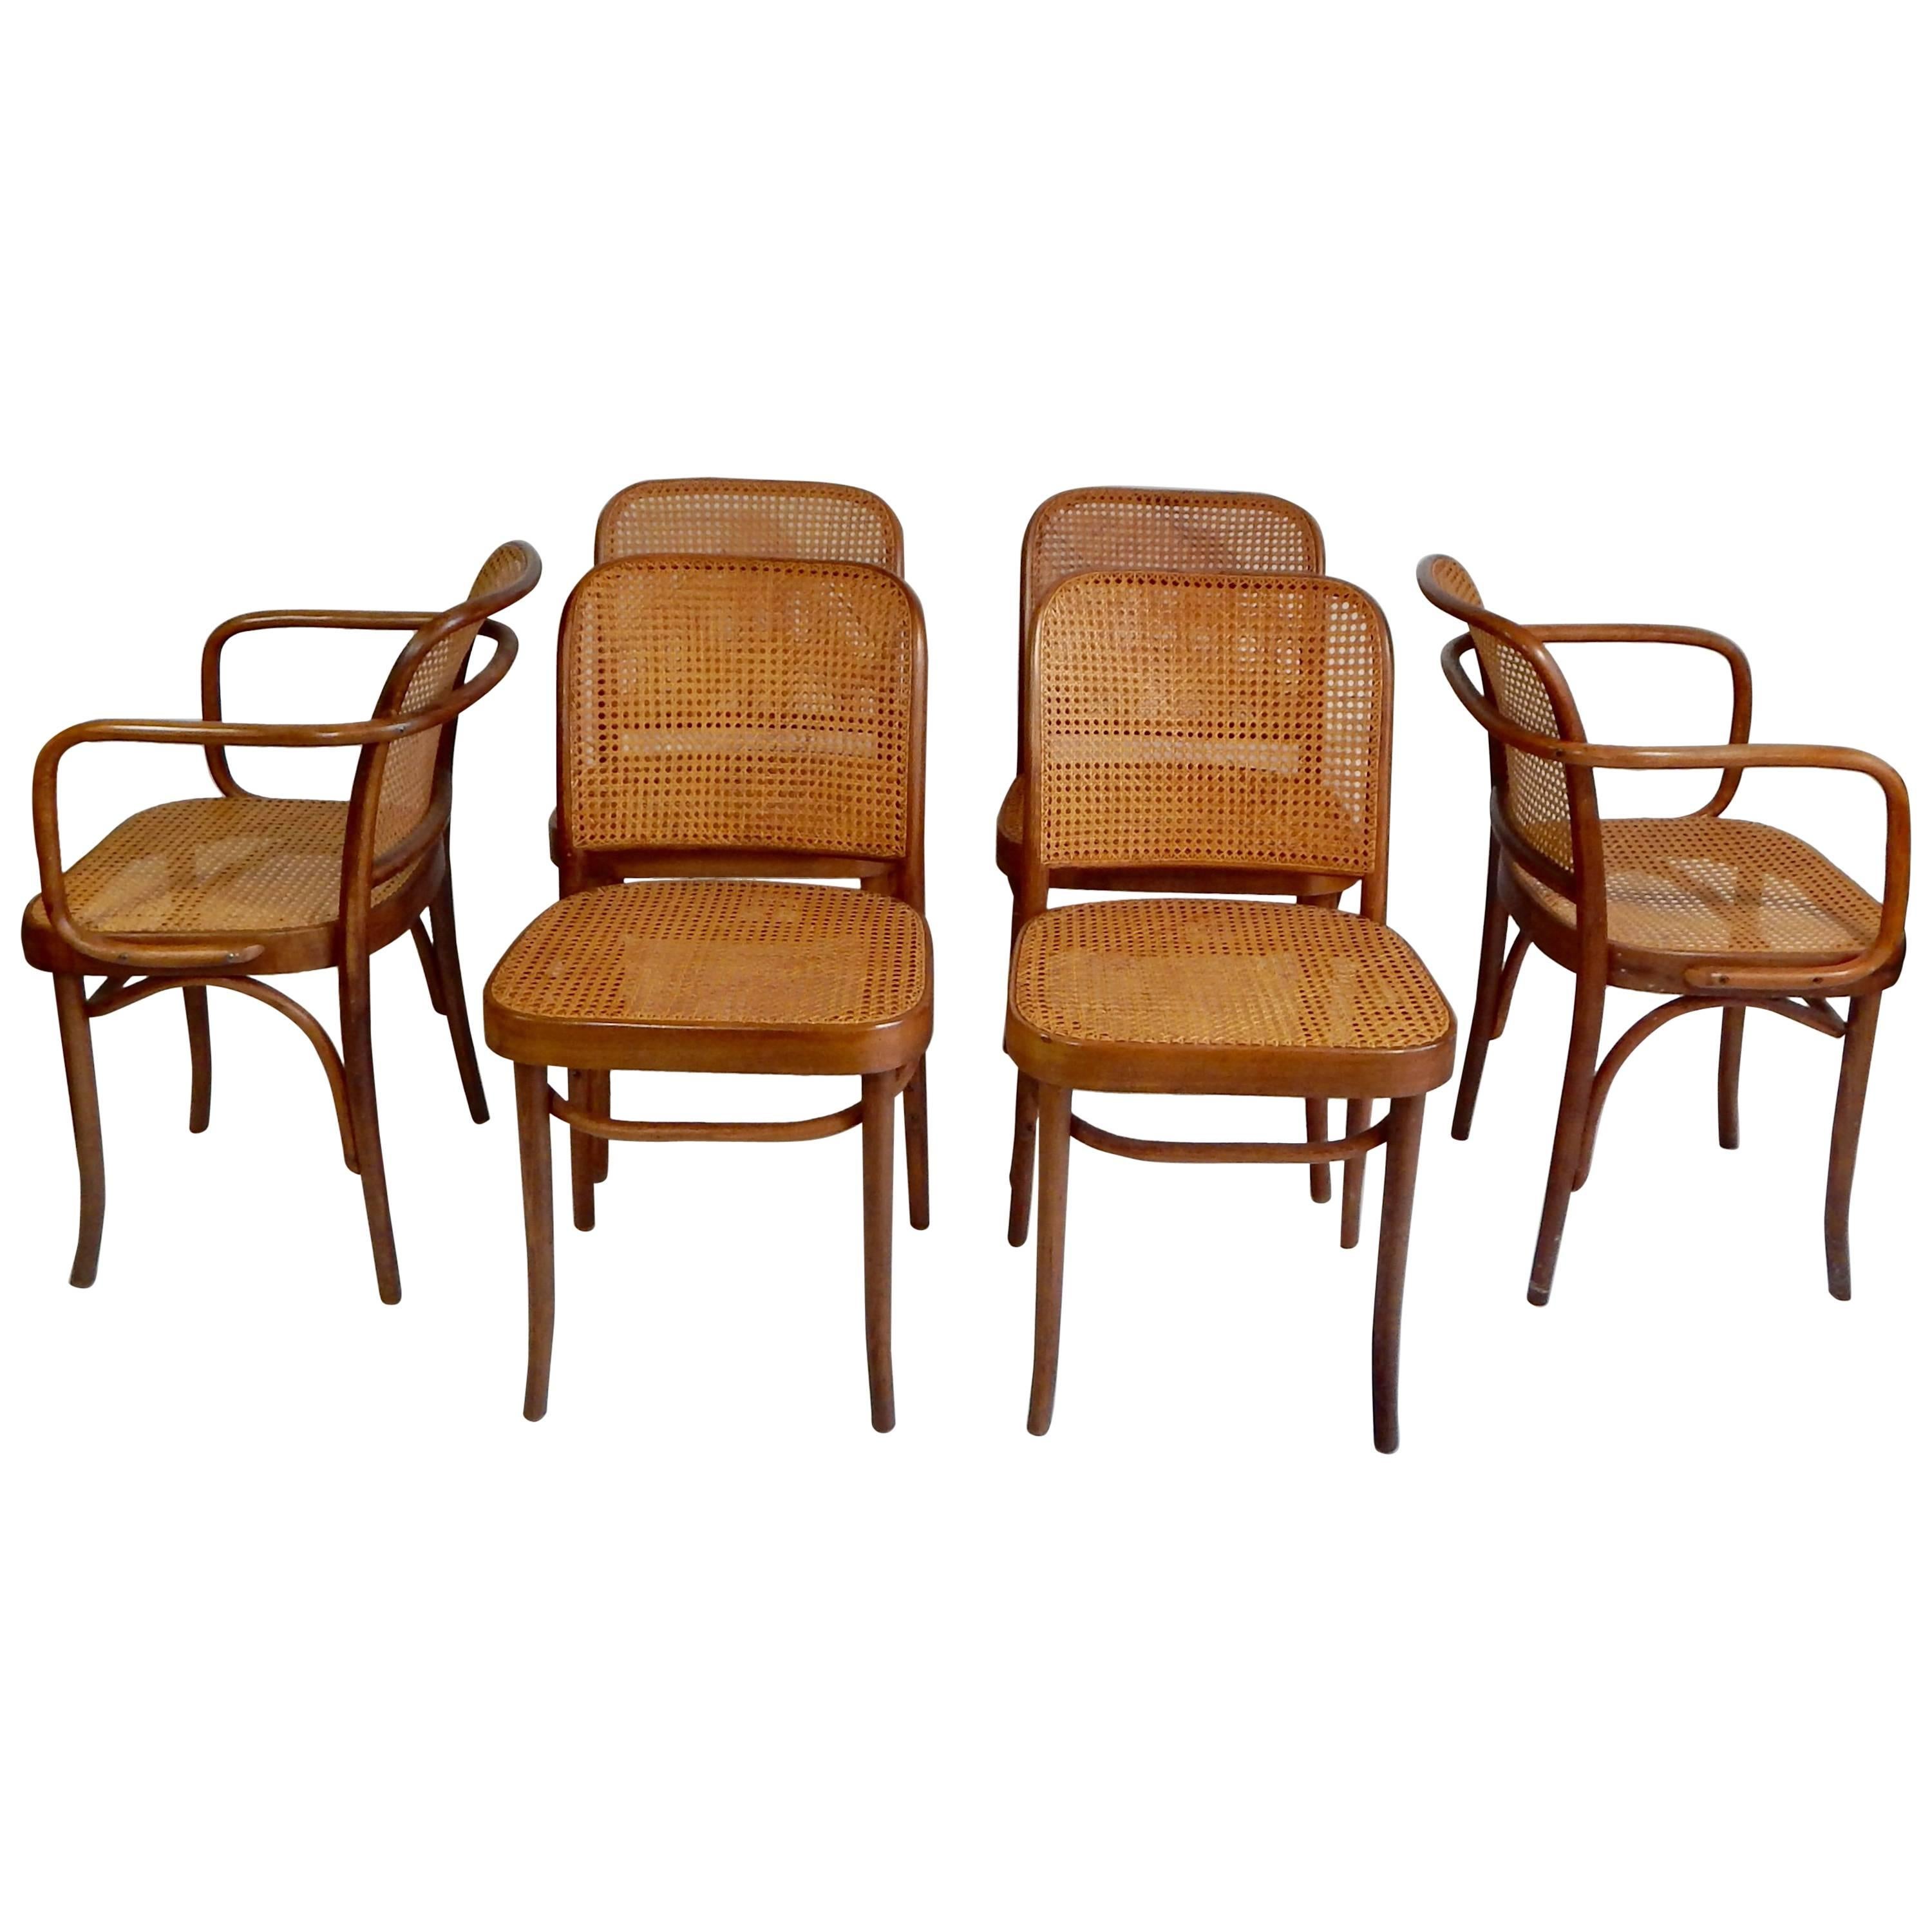 Original 1920s Josef Hoffmann Thonet Bentwood Cane Chairs, Poland